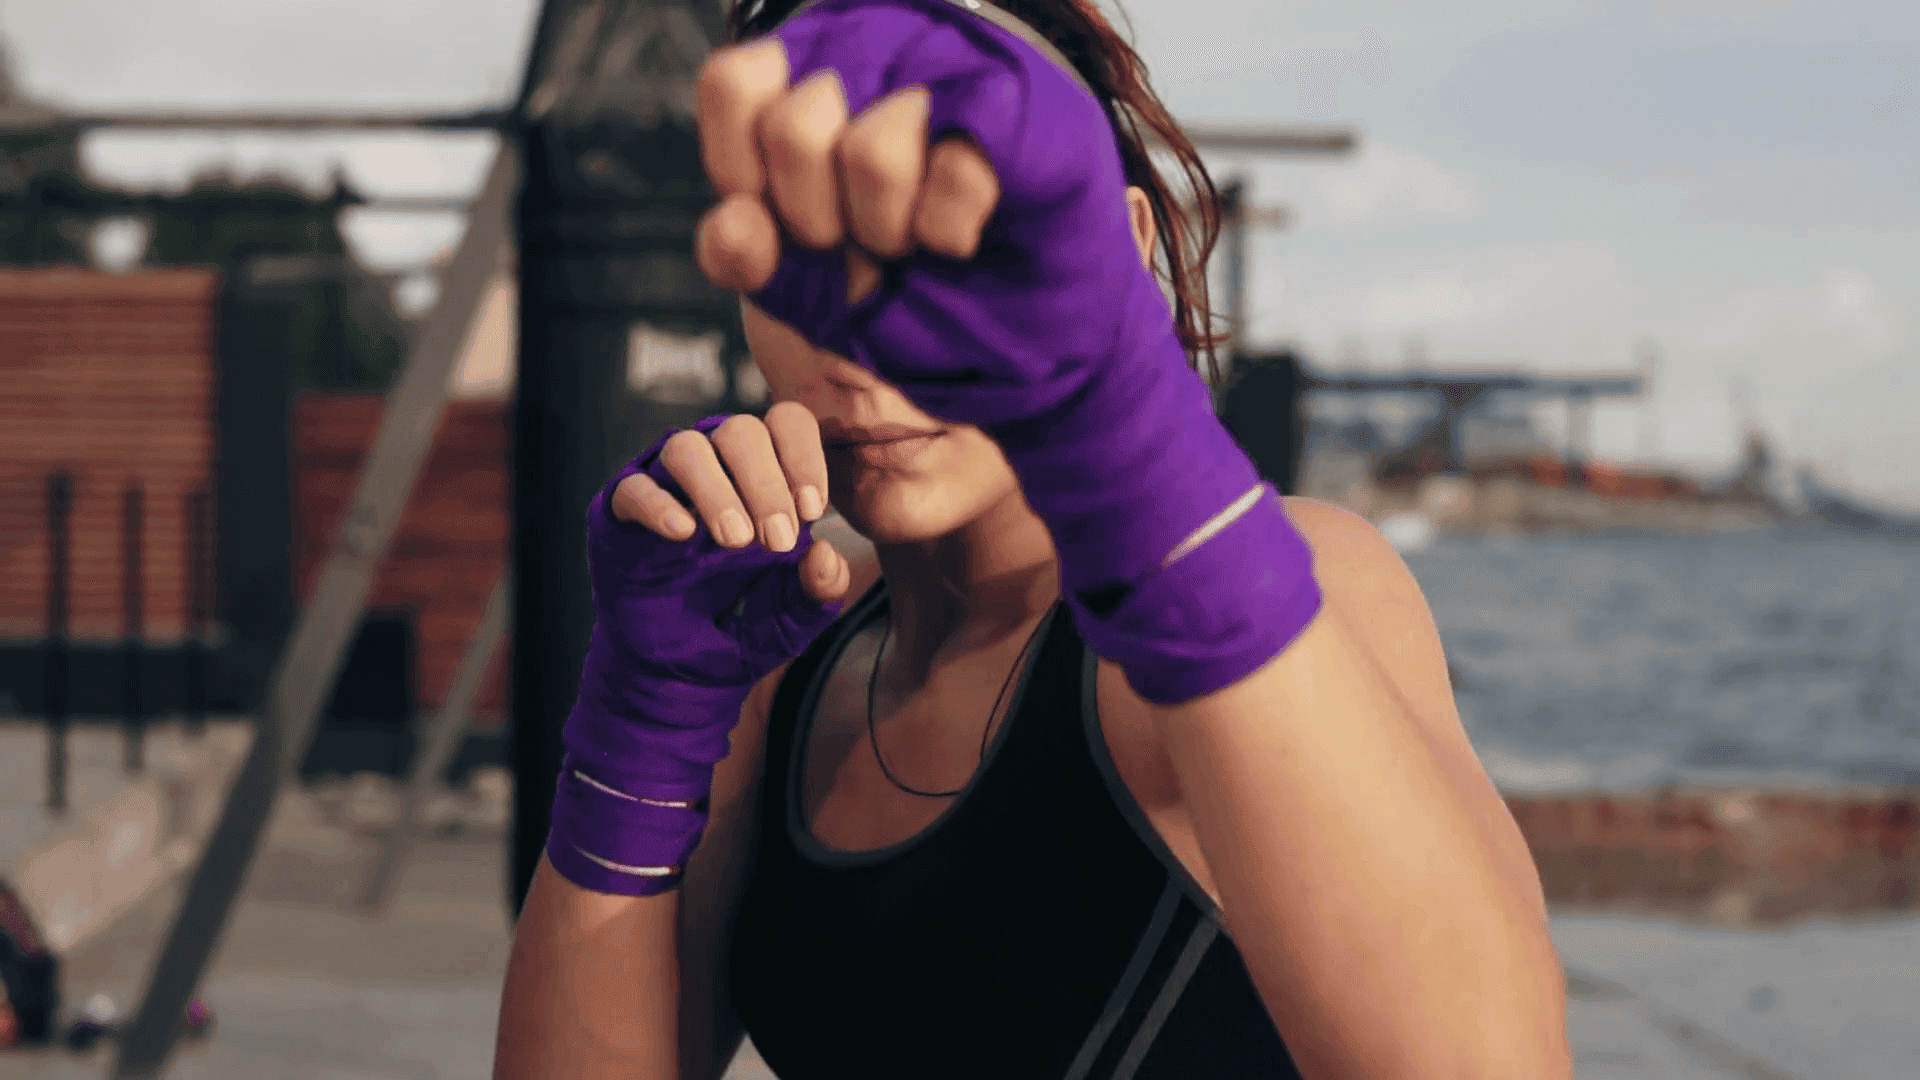 Cómo se deben vendar las manos antes de practicar boxeo? - Grupo Milenio